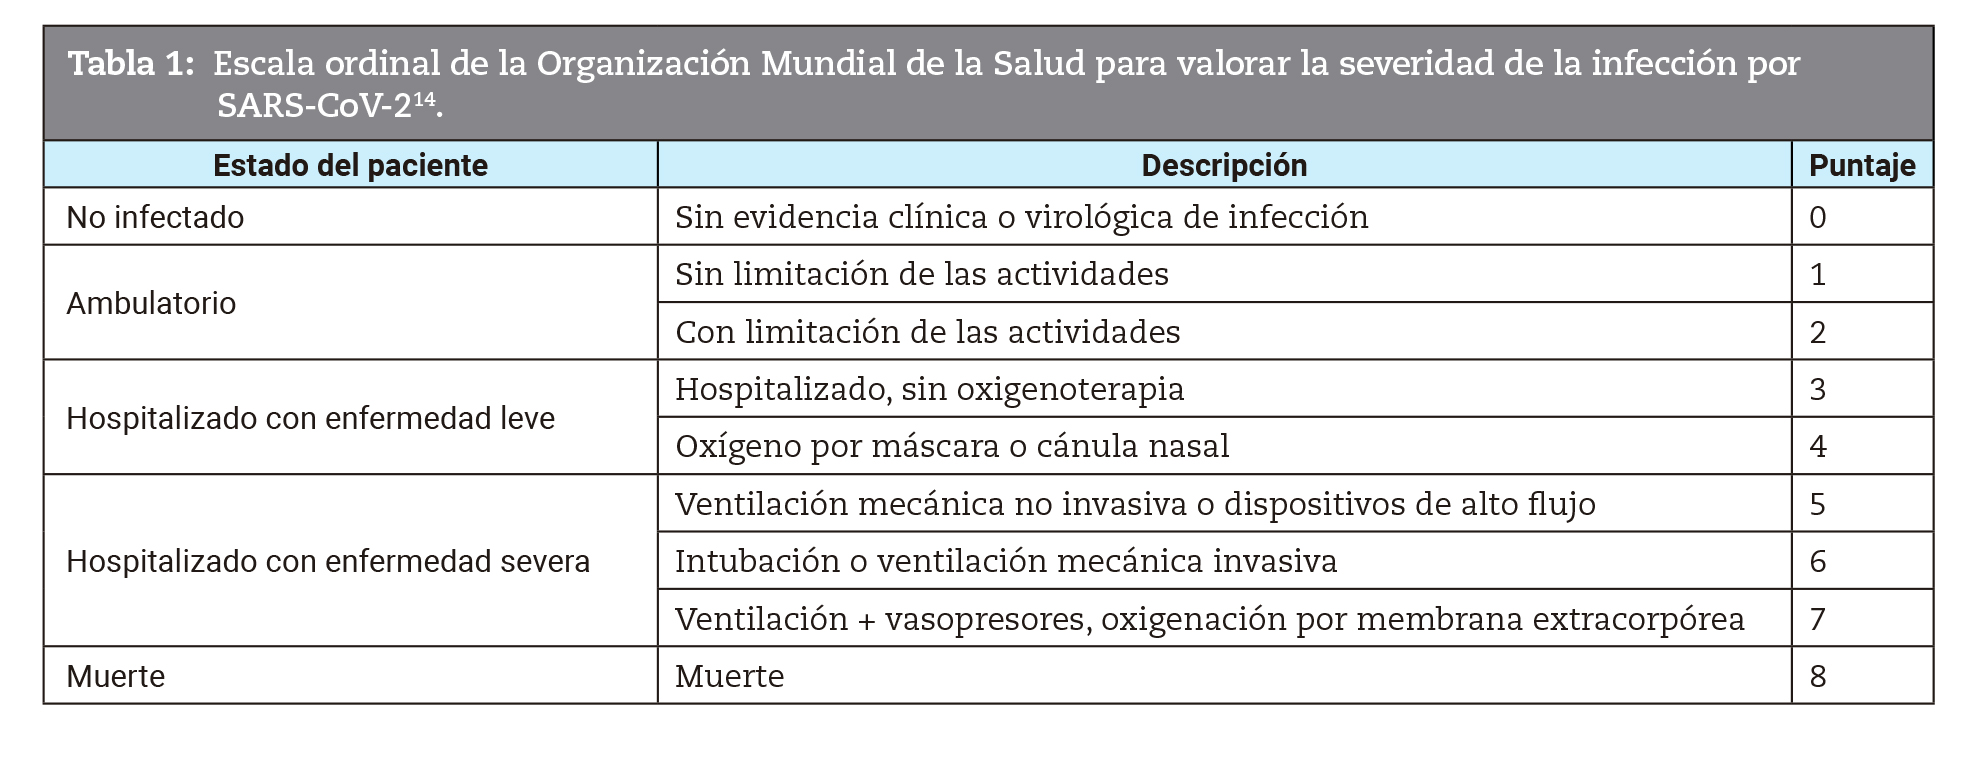 Escala ordinal de la Organización Mundial de la Salud para valorar la severidad de la infección por SARS-CoV-214.